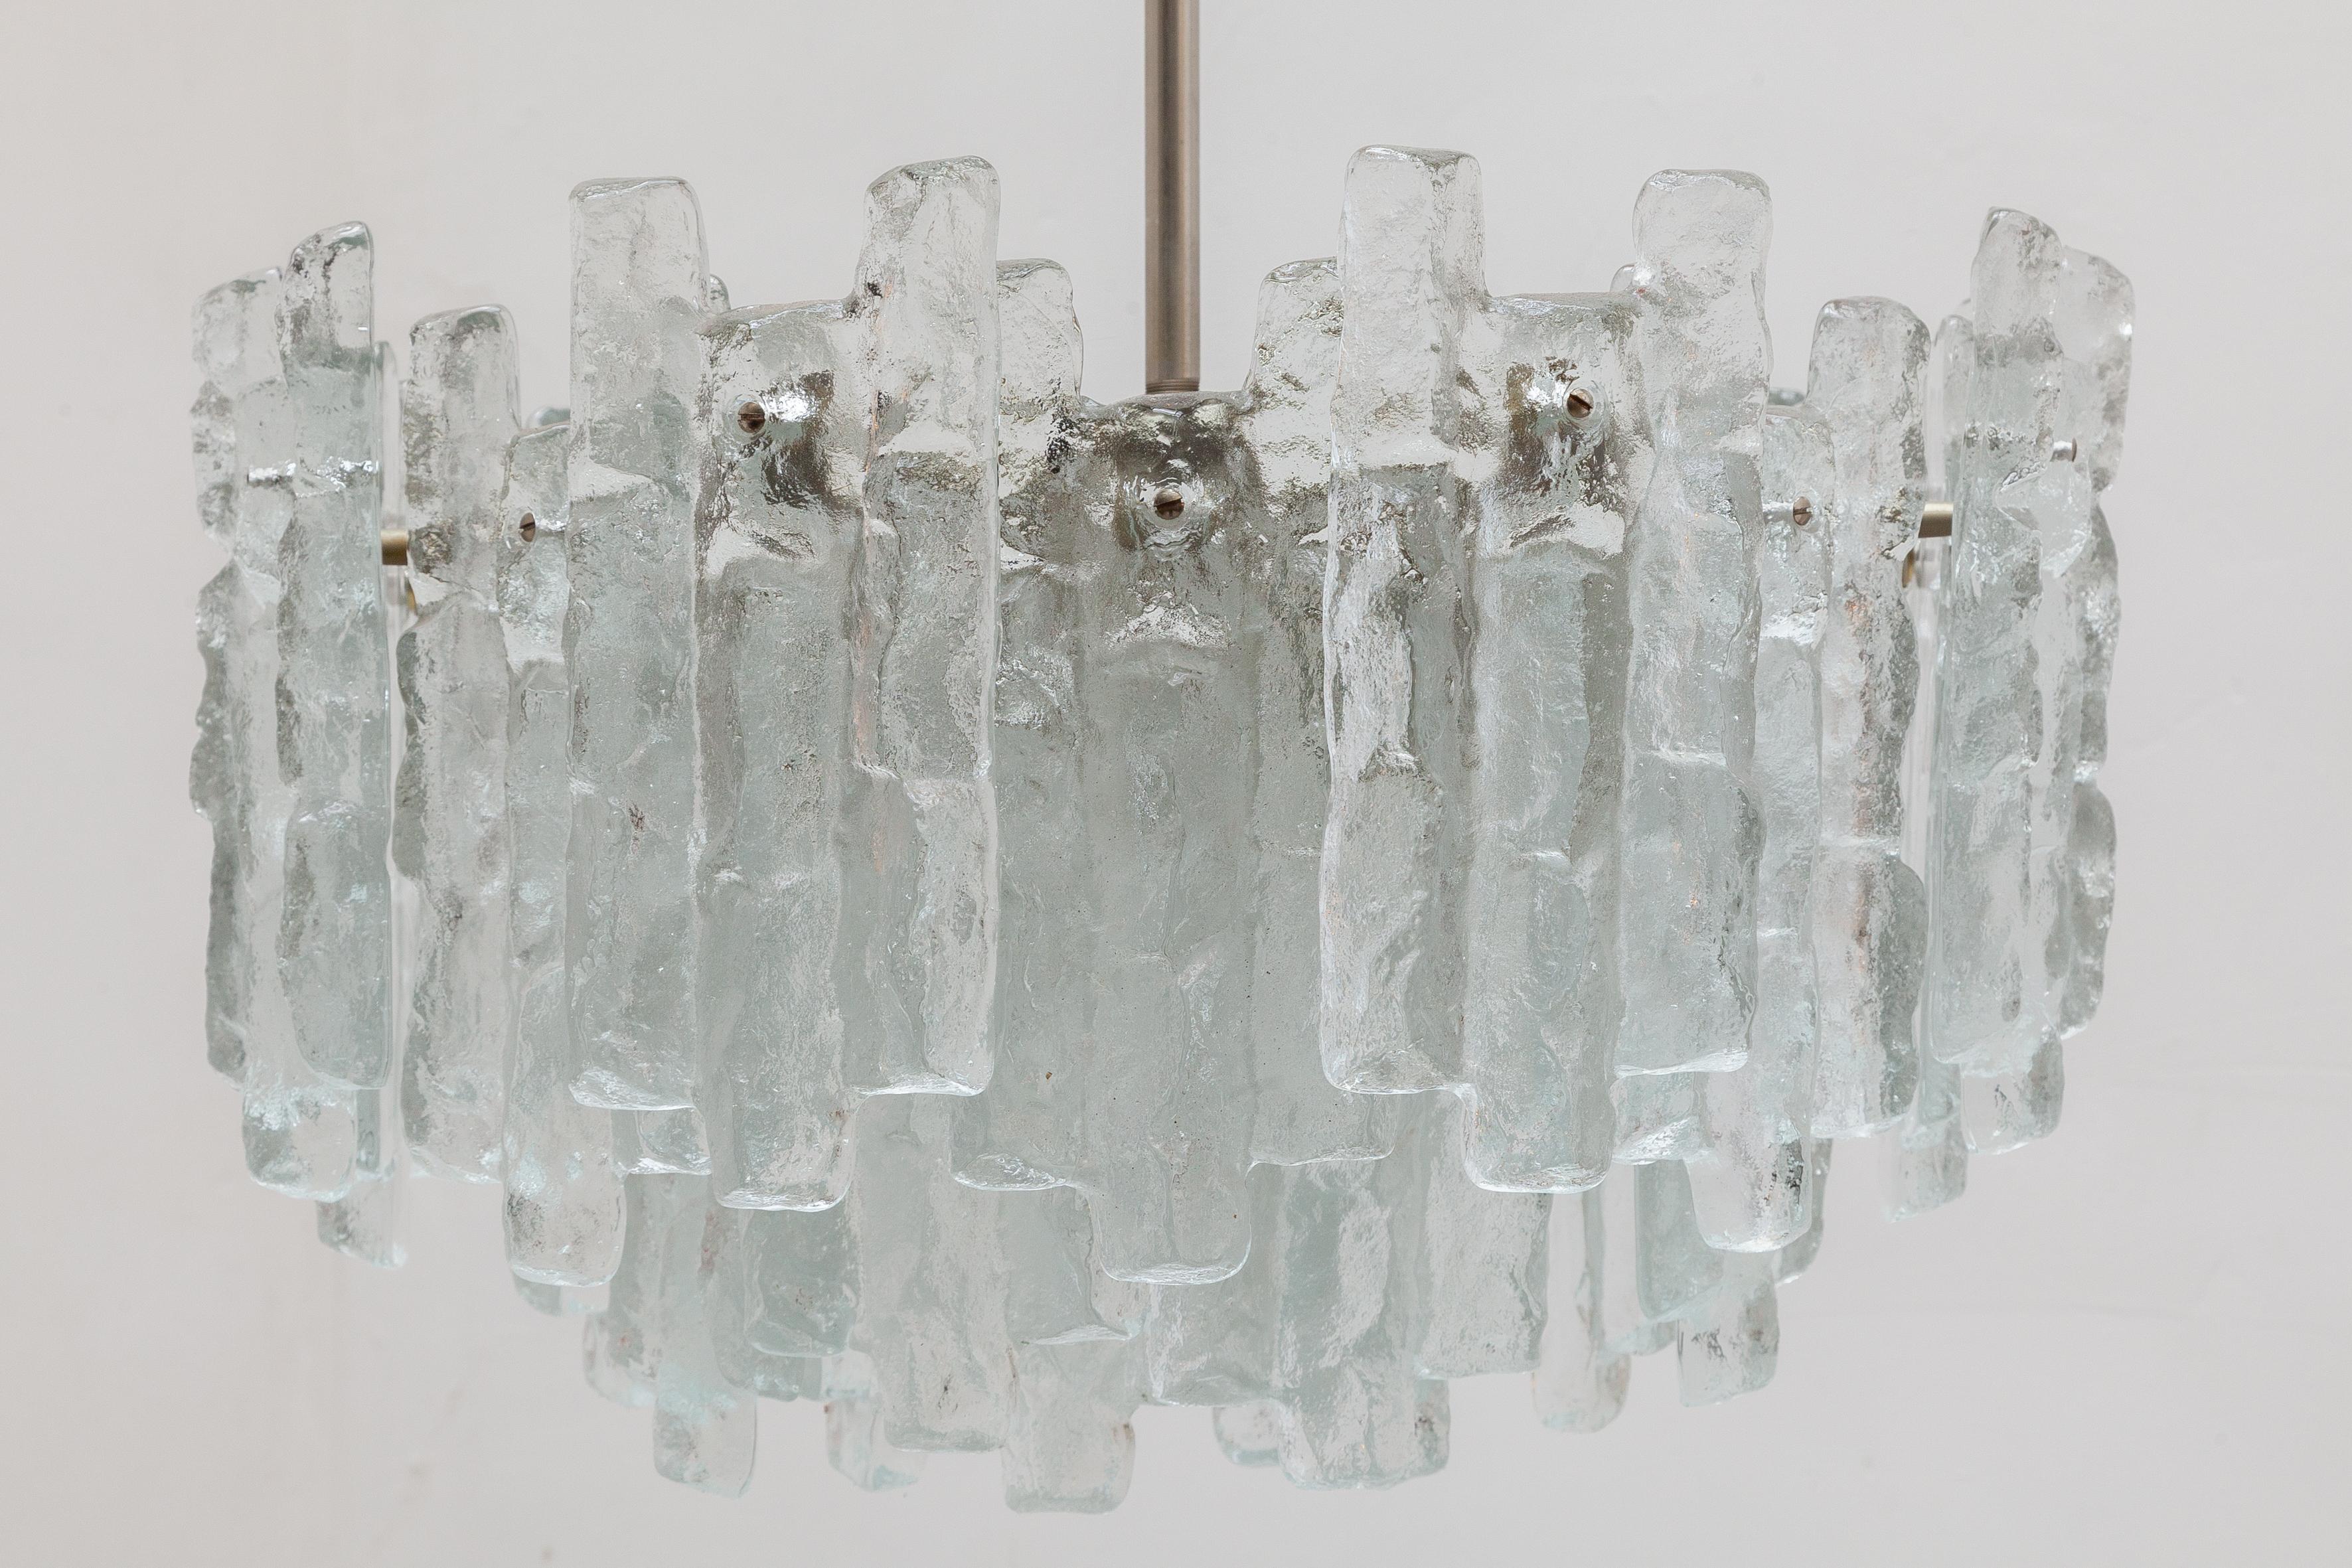 Extraordinaire lustre fabriqué par la société autrichienne Kalmar. Constitué de trois couches et de 32 morceaux de bloc de glace solide sur une base en argent. Le lustre est éclairé par douze ampoules. Le poids est de plus de 30 kgs !

Trois